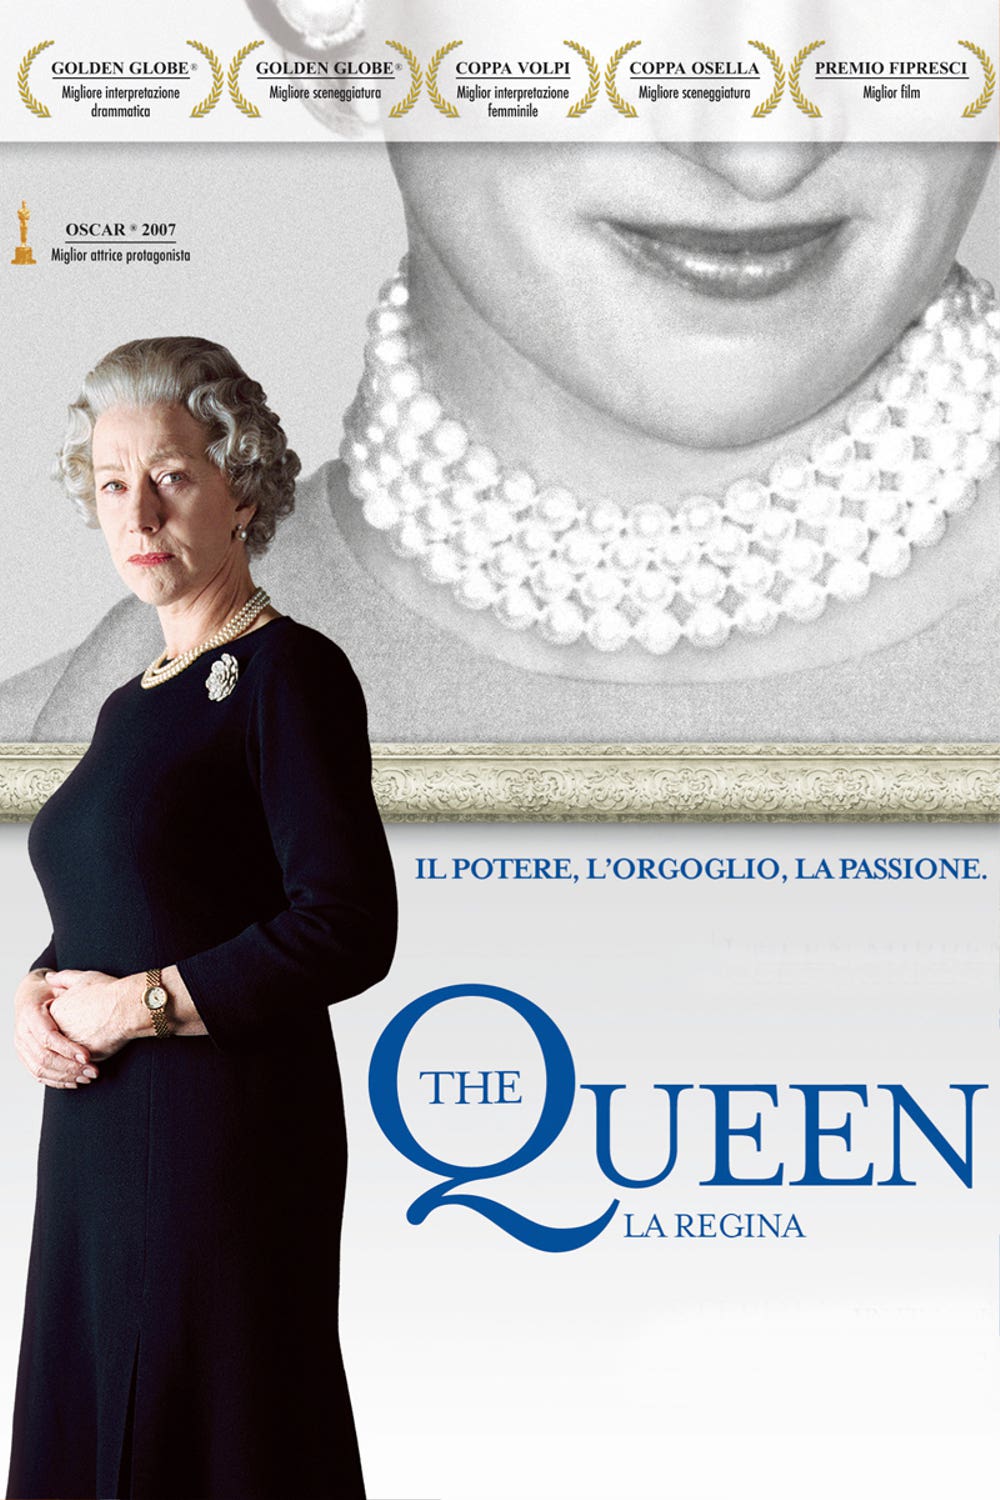 The Queen – La regina [HD] (2006)